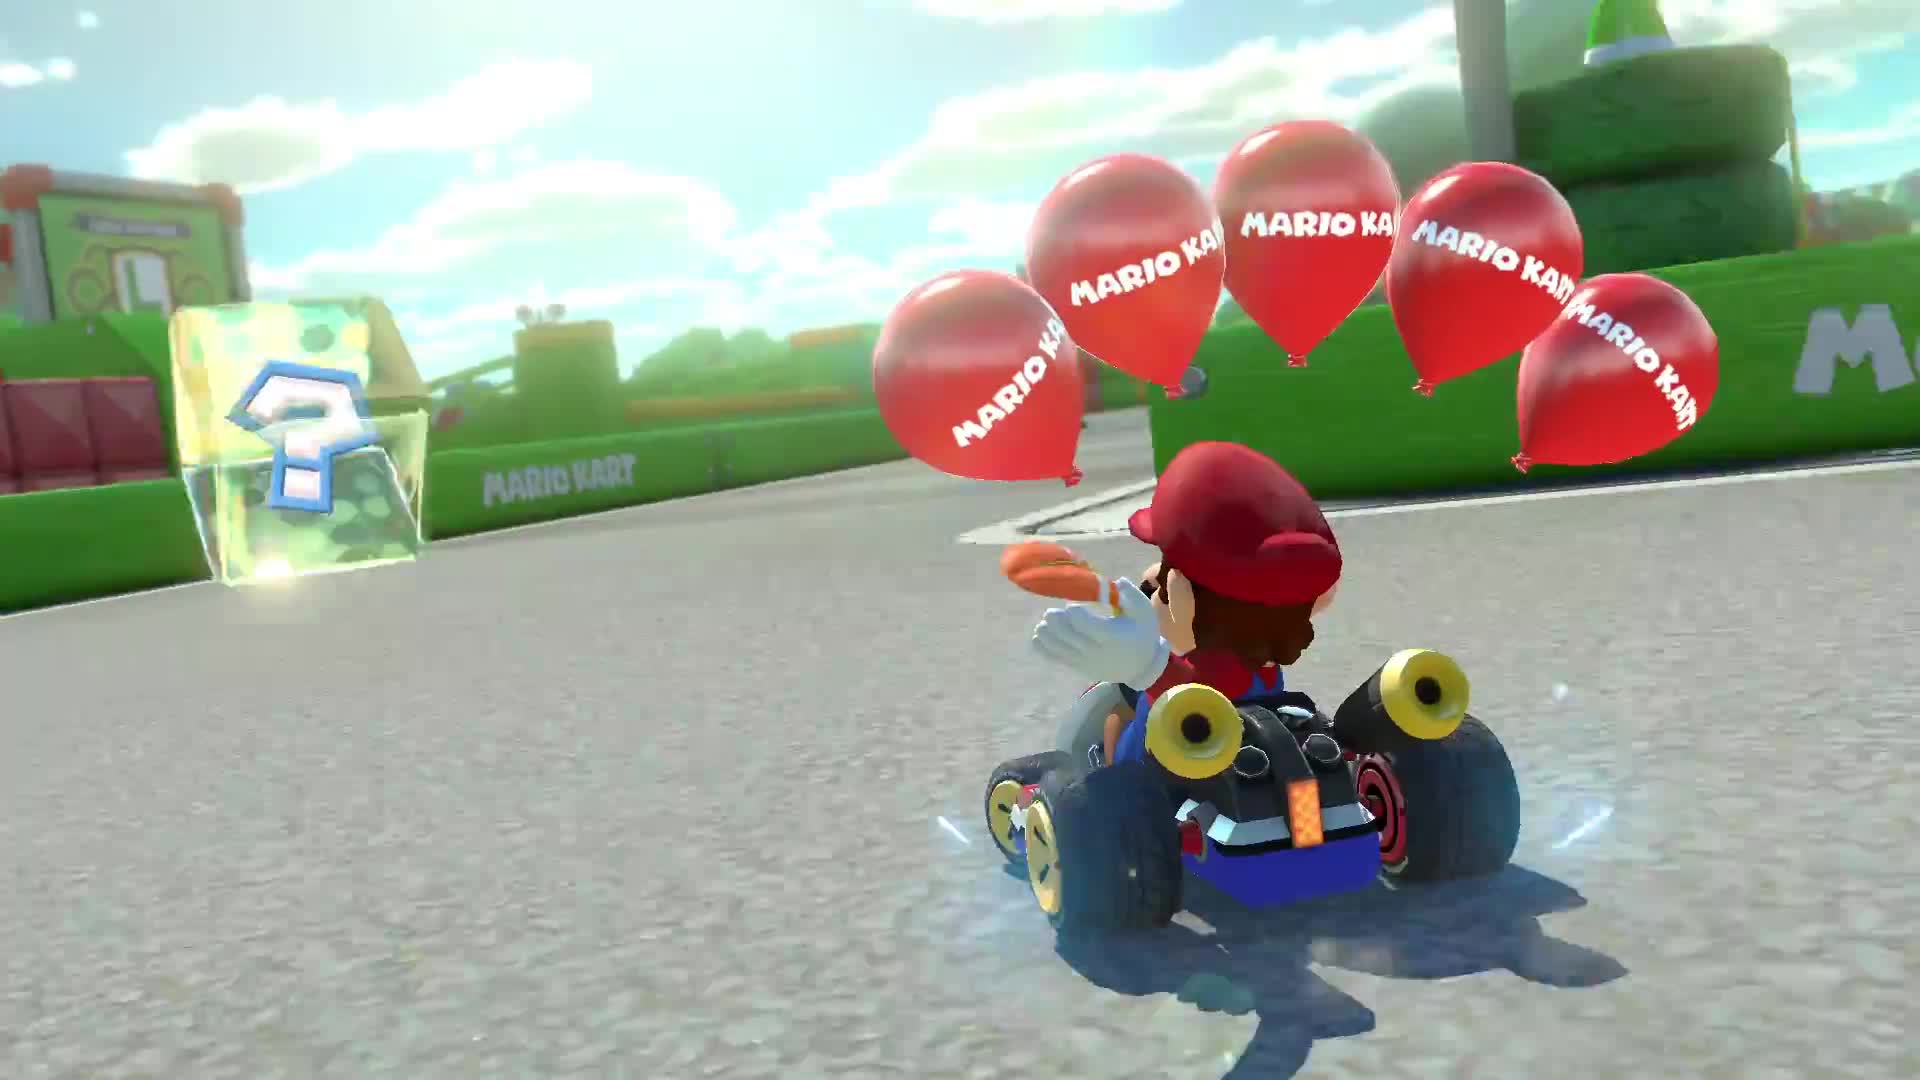 Mario Kart 8 Deluxe - Nintendo Switch trailer